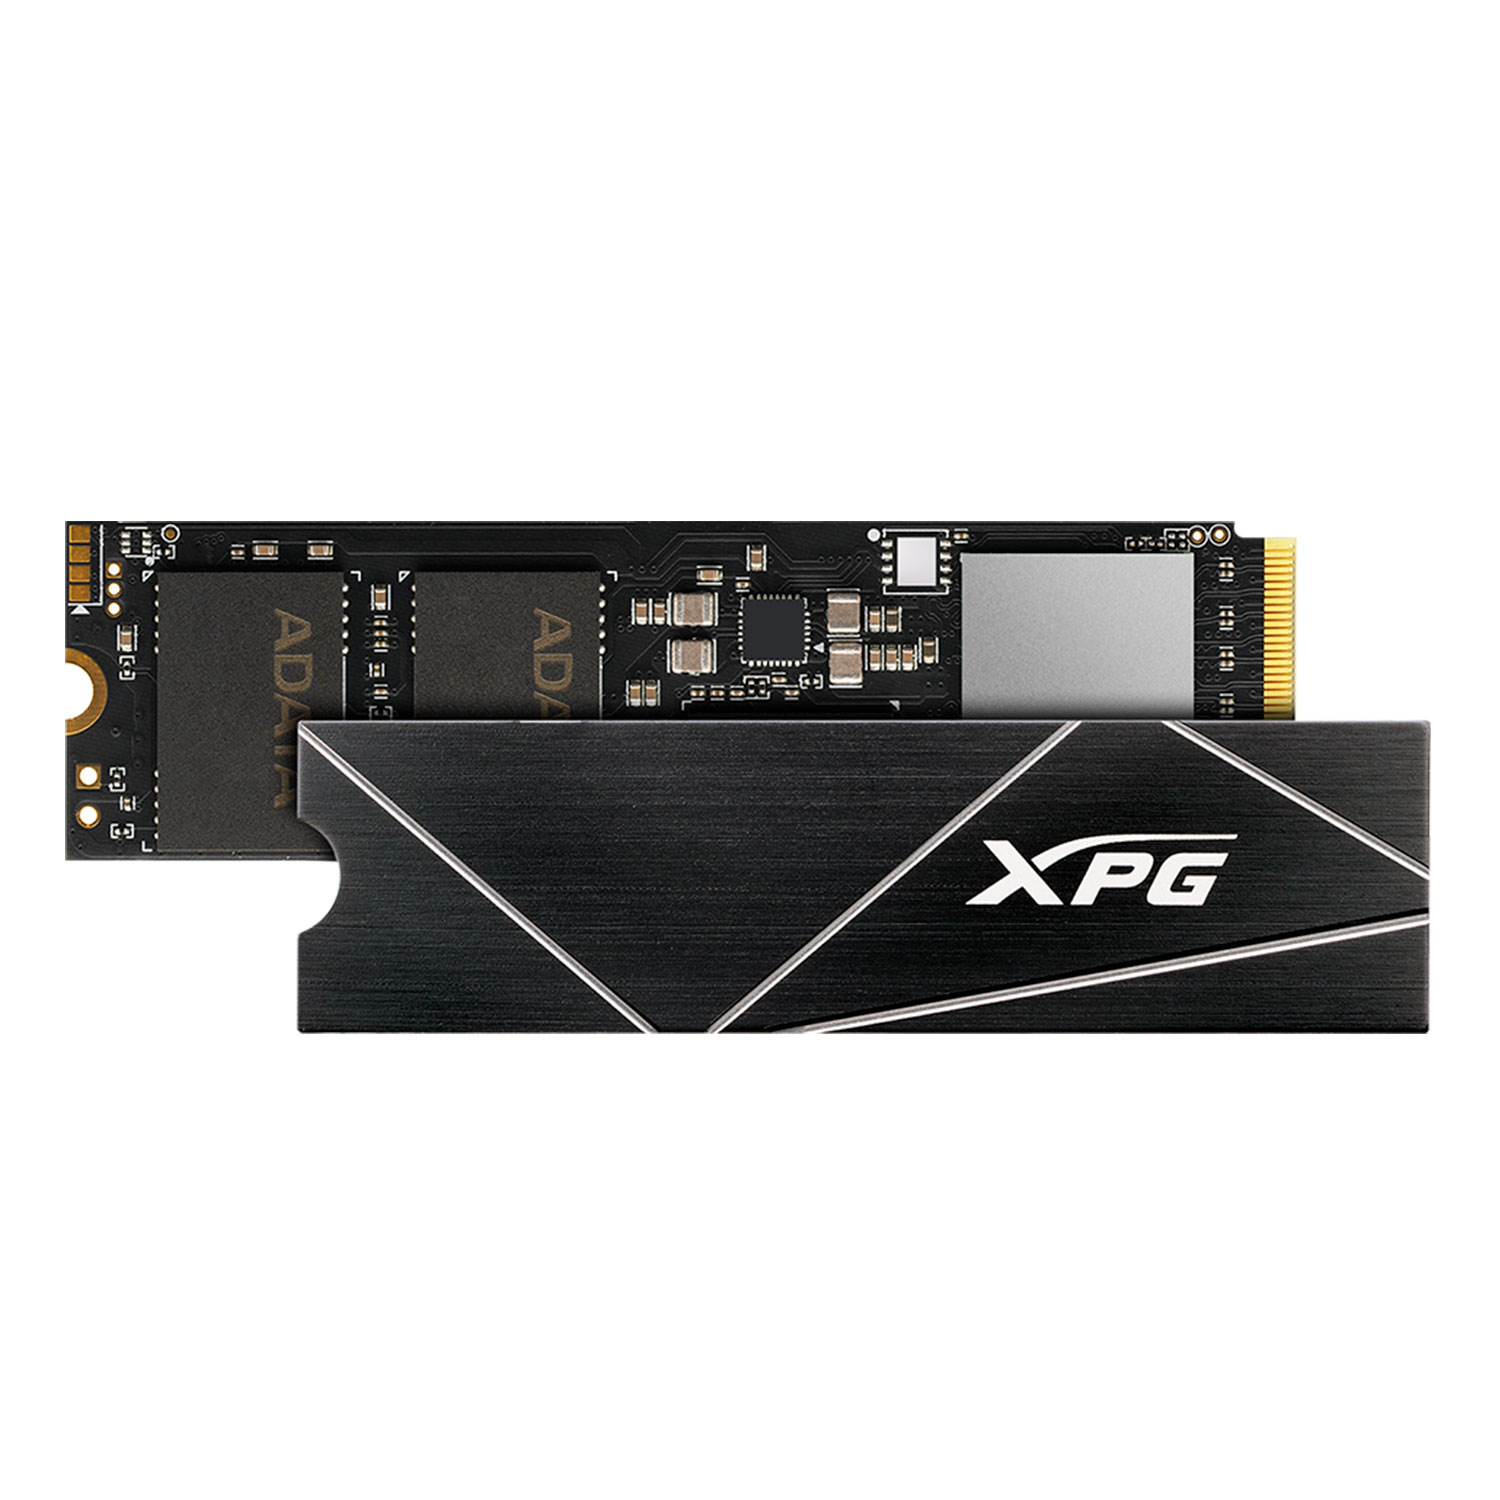 SSD M.2 XPG Adata Gammix S70 Blade 512GB NVMe PCIe Gen4 - AGAMMIXS70B-512G
